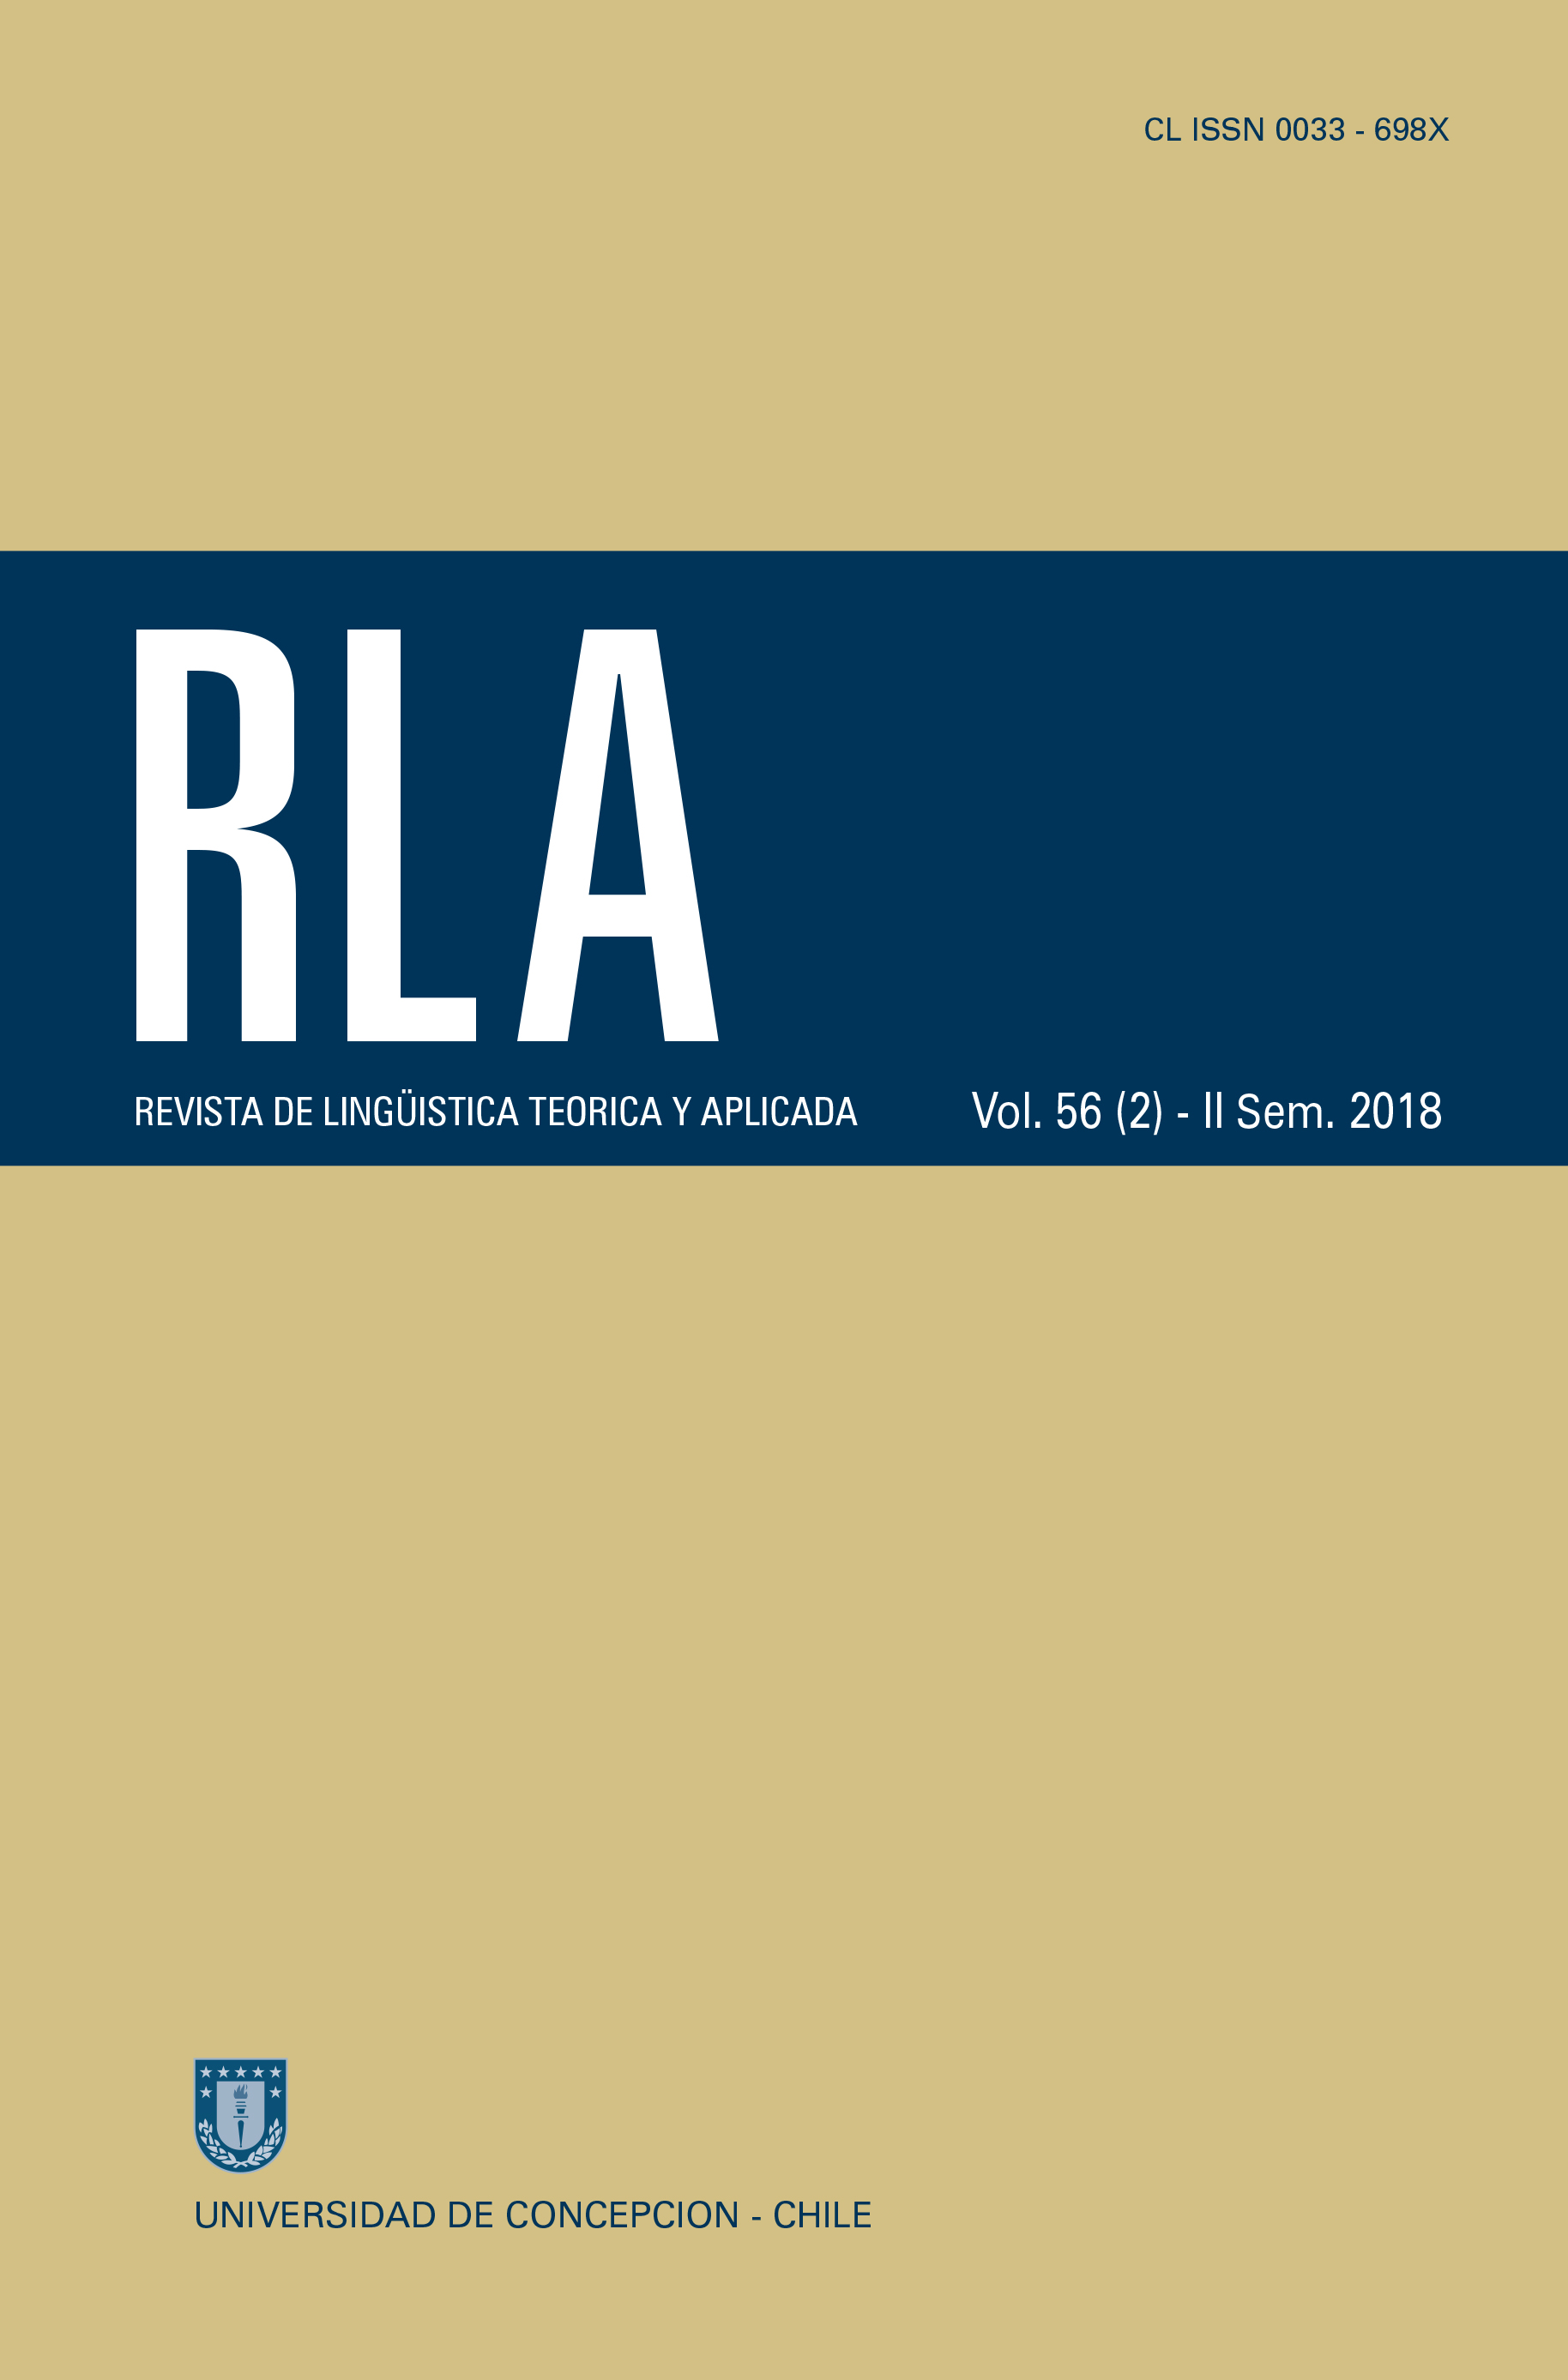 Revista de Linguística Teórica y Aplicada Vol. 56 N°2 (2018)